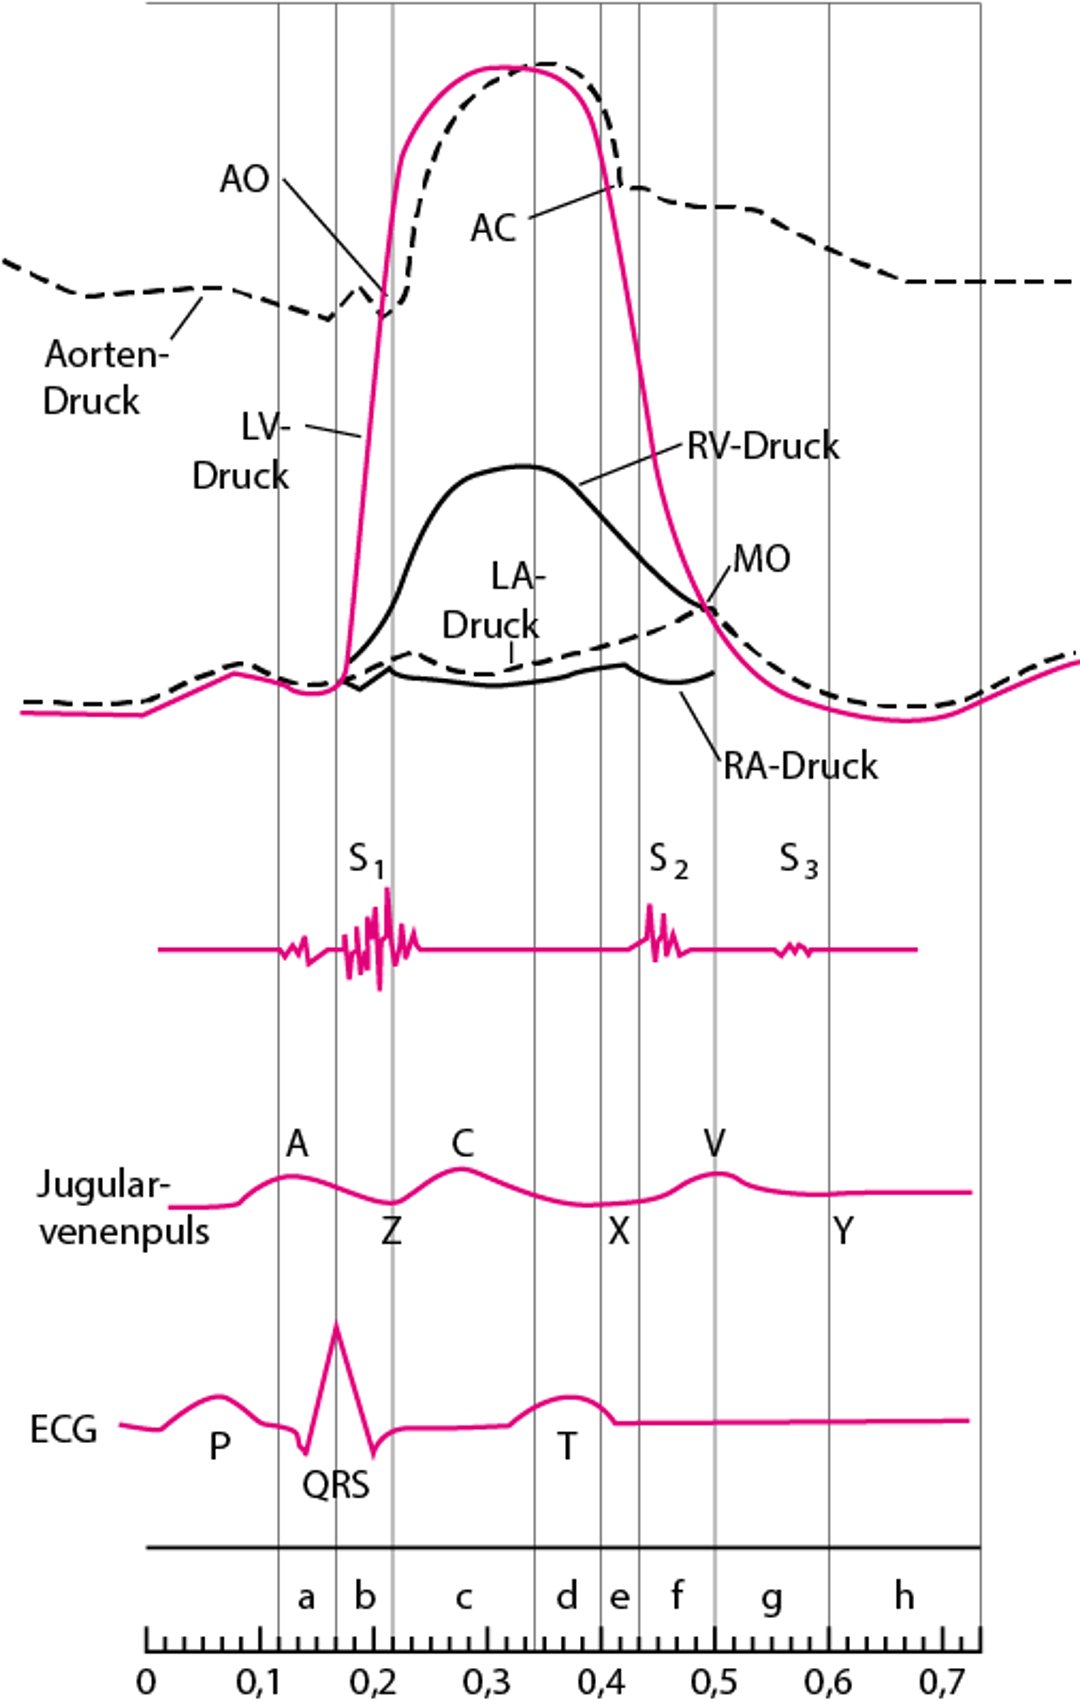 Diagramm der Herzzyklus mit Druckkurven der Herzkammern, Herztöne, Jugularvenenpulswelle und EKG